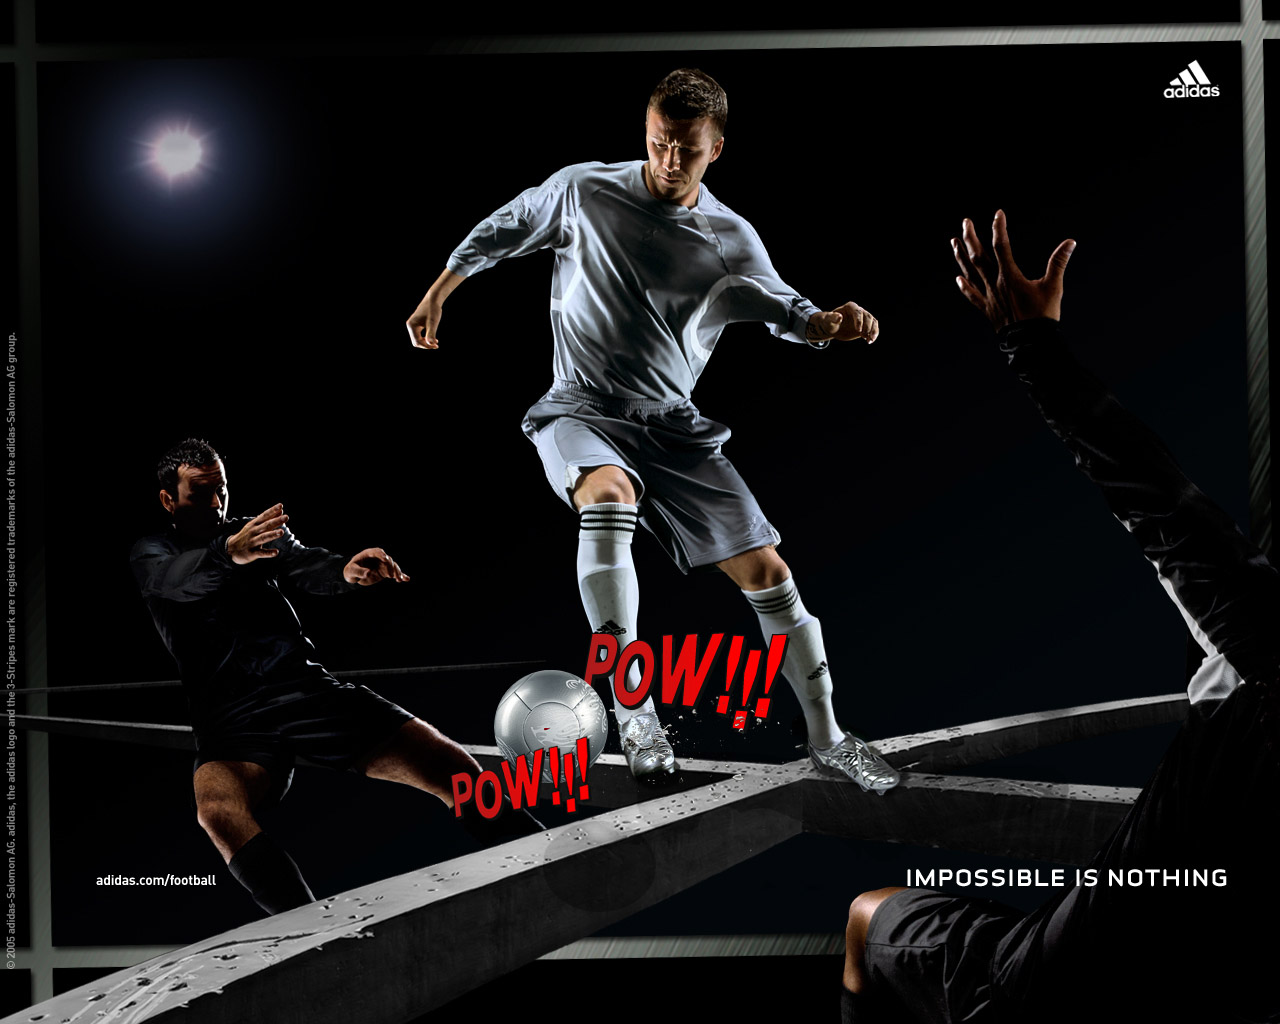 Adidas Wallpaper Football See To World